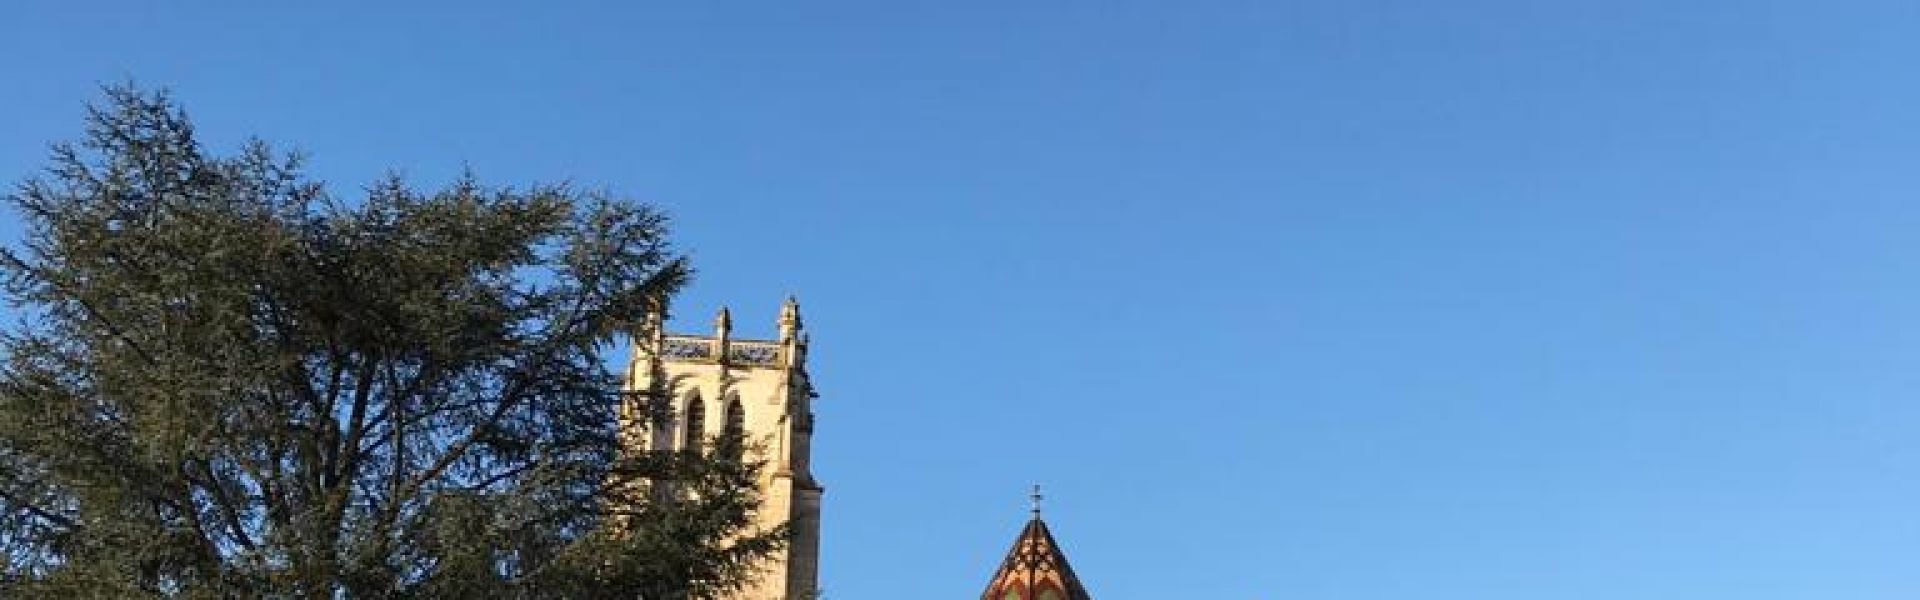 Bourg en bresse-kirche-frankreich-urlaub Das idyllische Bild zeigt die beeindruckende Kirche von Bourg-en-Bresse, einer charmanten Stadt in Frankreich. Die Kirche, bekannt als Notre-Dame, beeindruckt mit ihrer imposanten Architektur und ihrer reichen Geschichte. Tauchen Sie ein in die Atmosphäre dieser historischen Stadt und entdecken Sie die Schönheit der Kirche von Bourg-en-Bresse. Genießen Sie einen unvergesslichen Urlaub in Frankreich und erkunden Sie die malerischen Straßen, traditionellen Märkte und gemütlichen Cafés dieser bezaubernden Stadt.